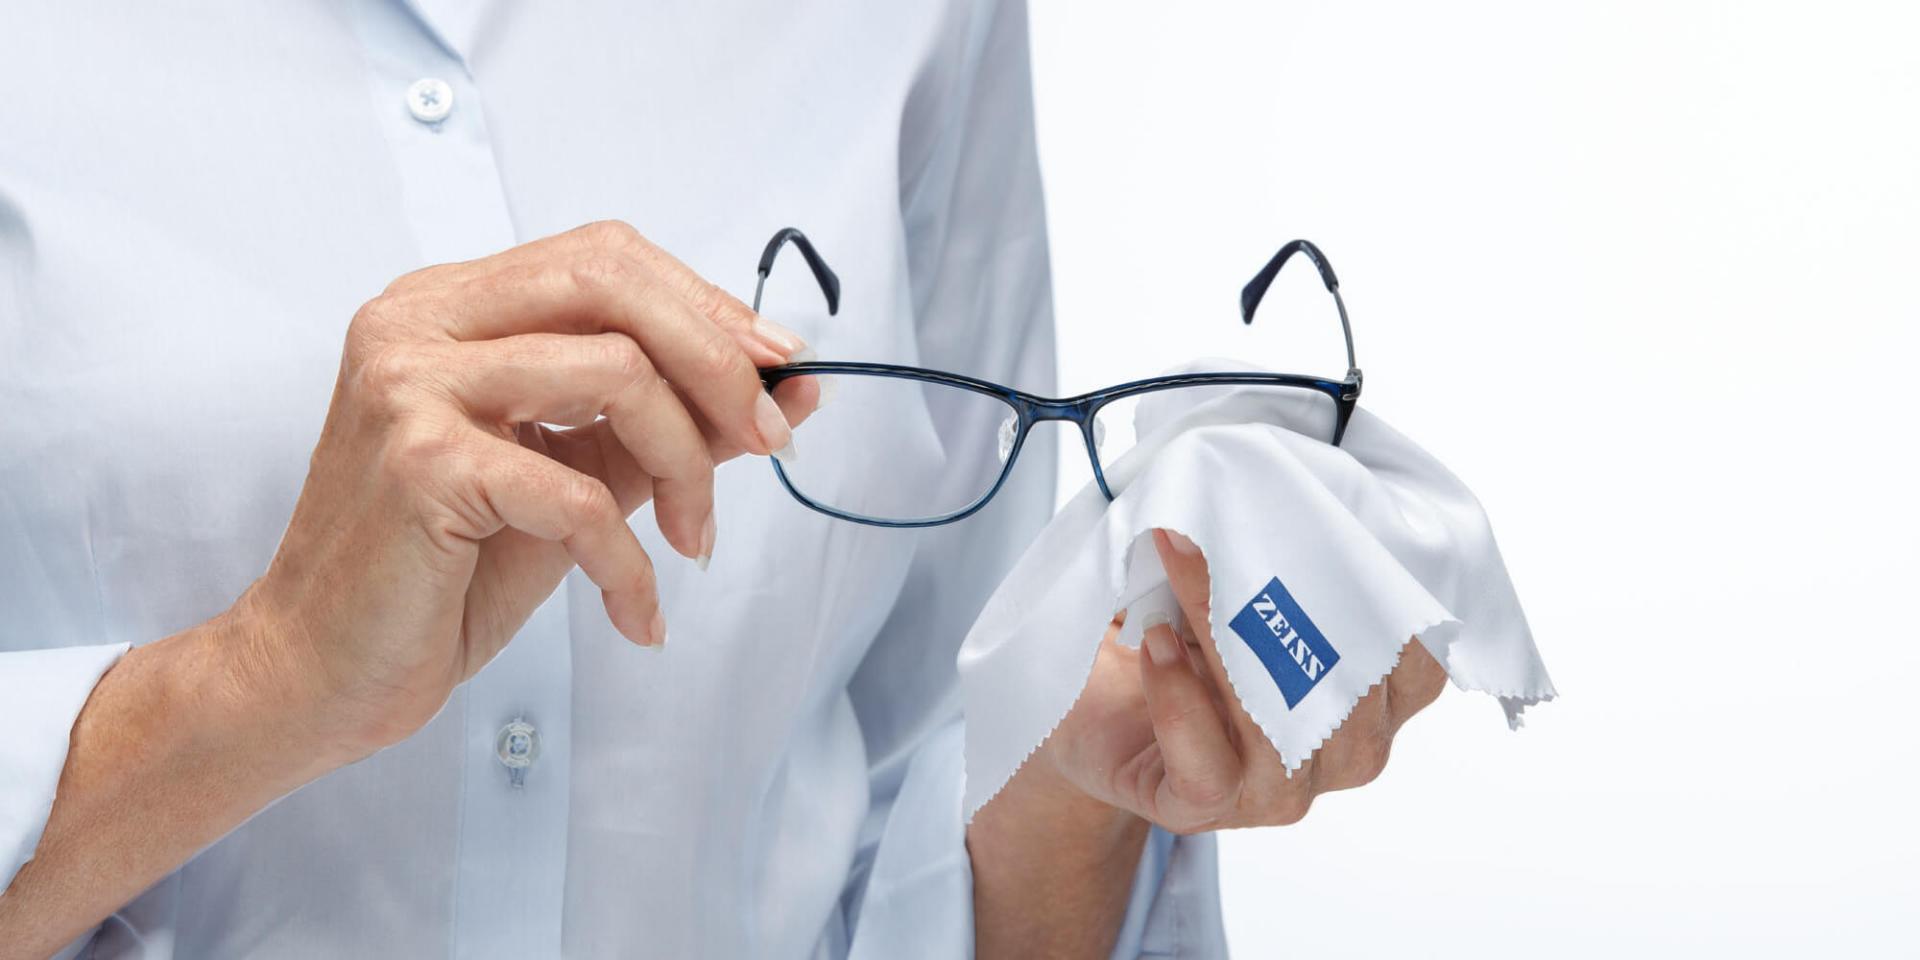 Come prendersi cura delle proprie lenti per occhiali?